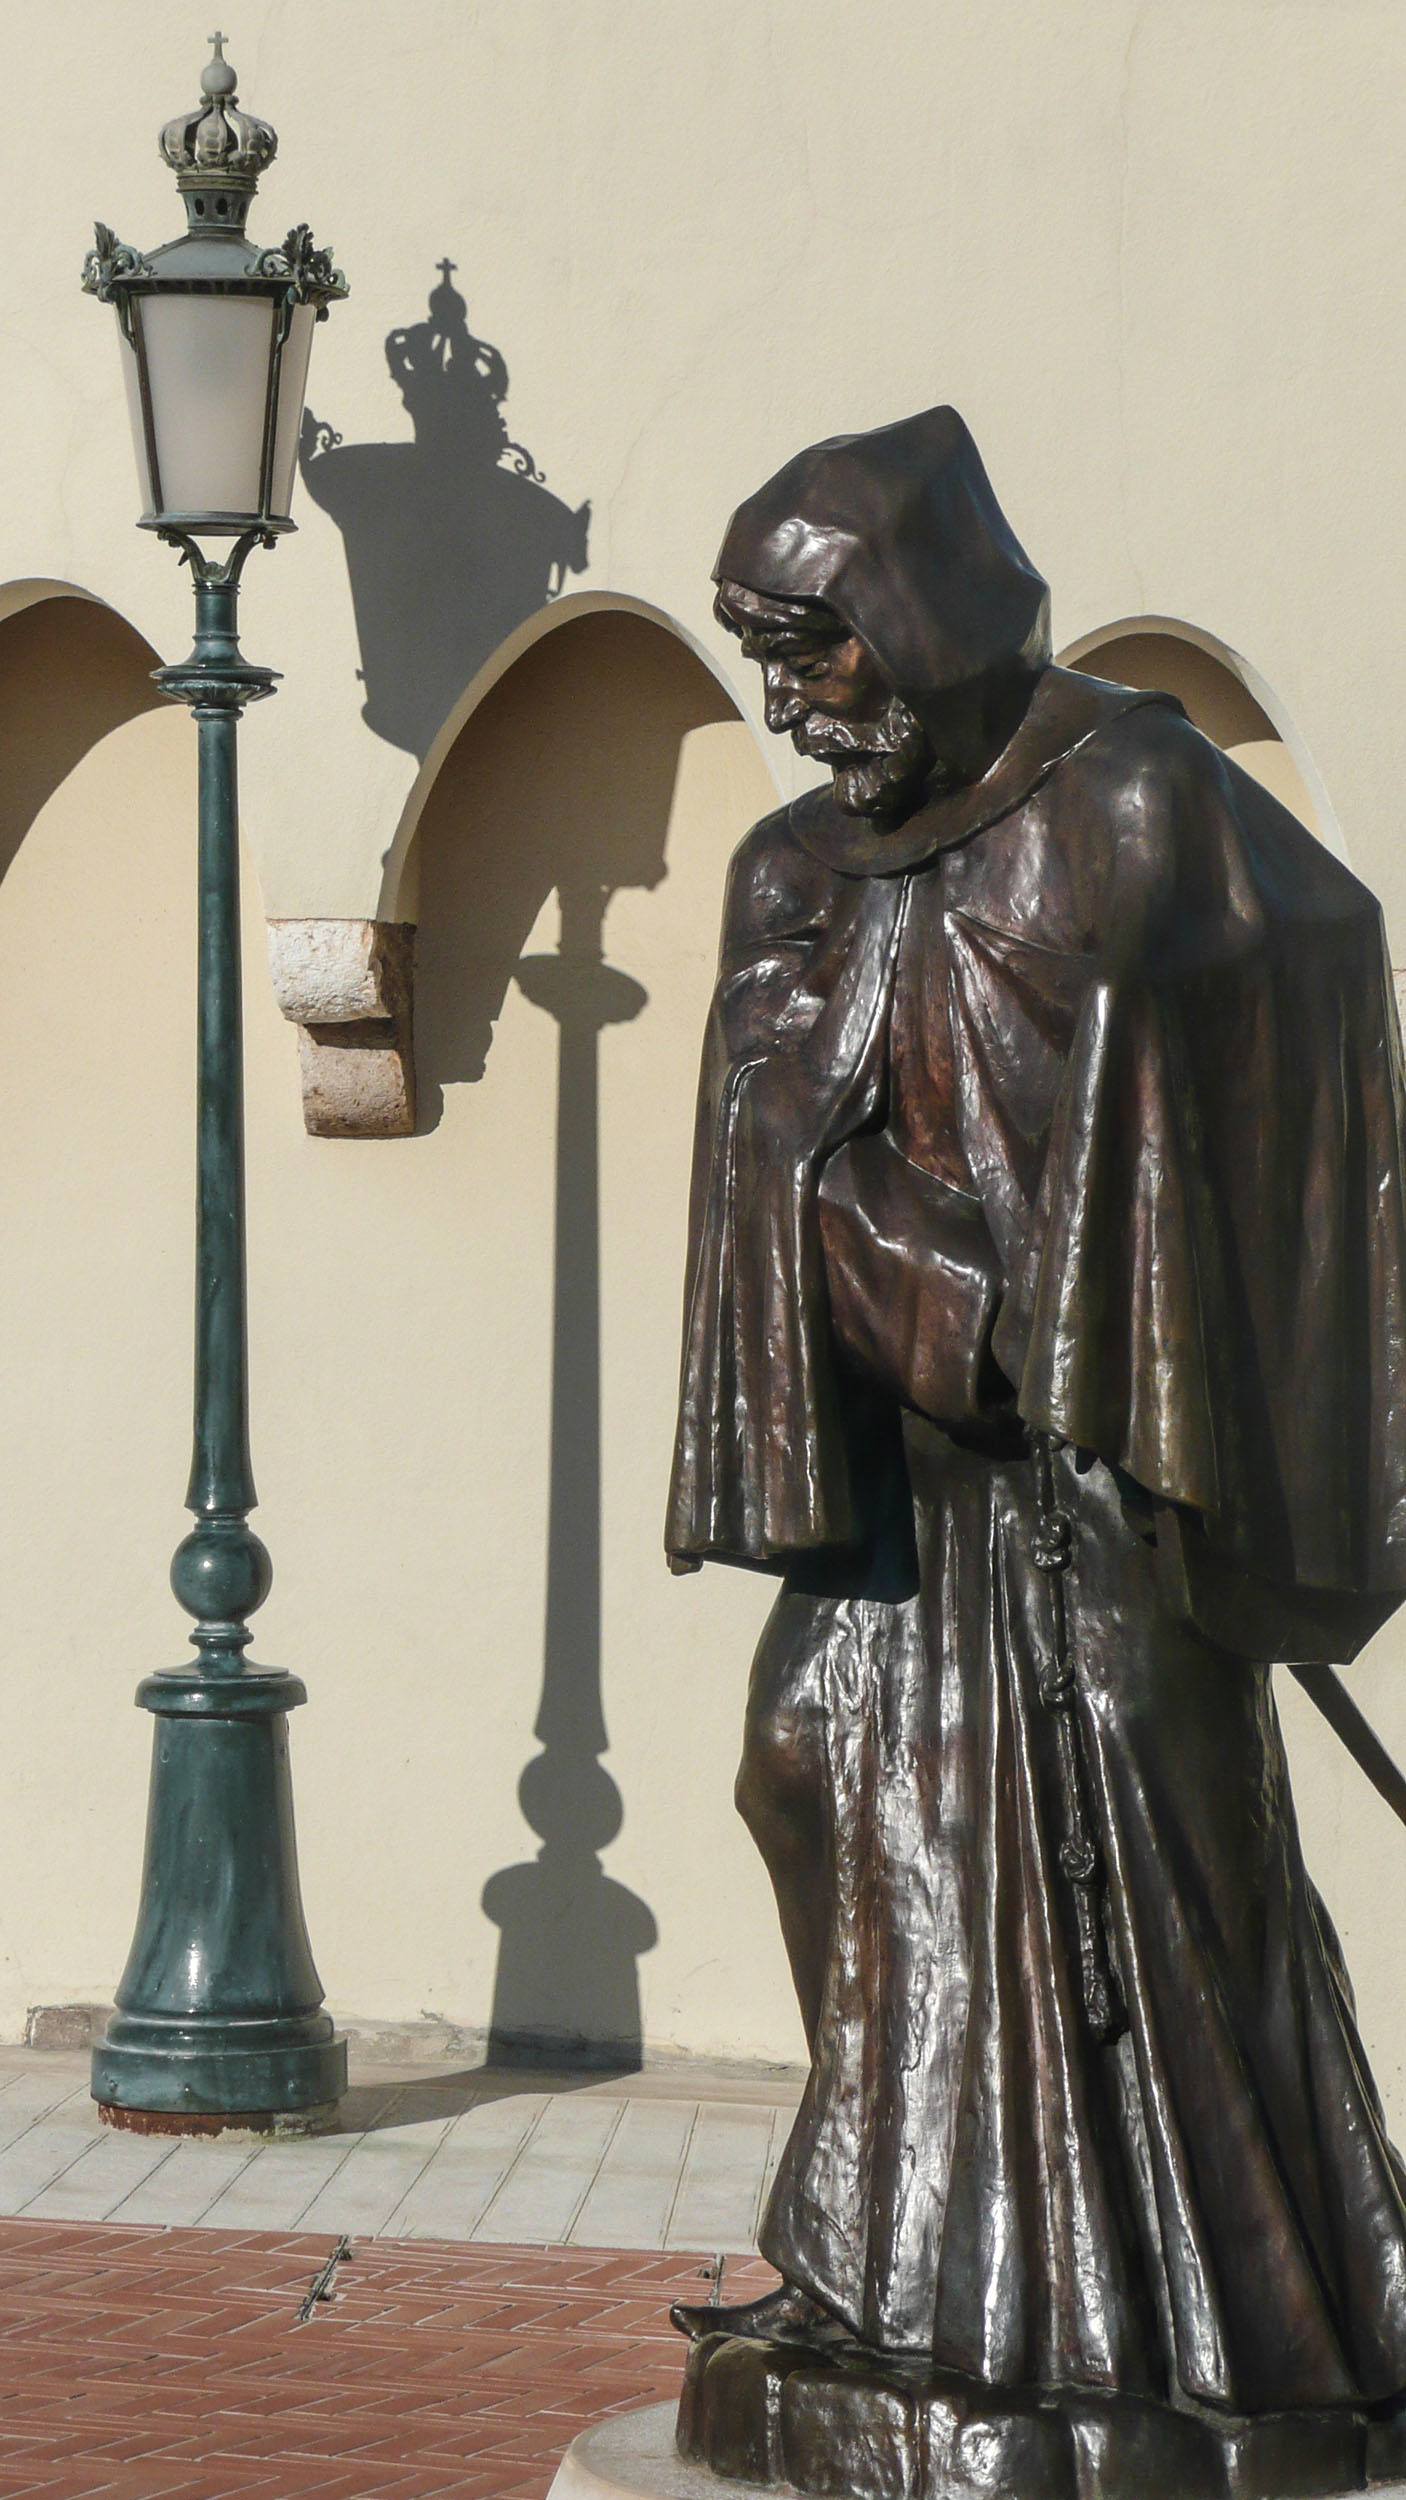 Statue in La Rocher district of Monaco